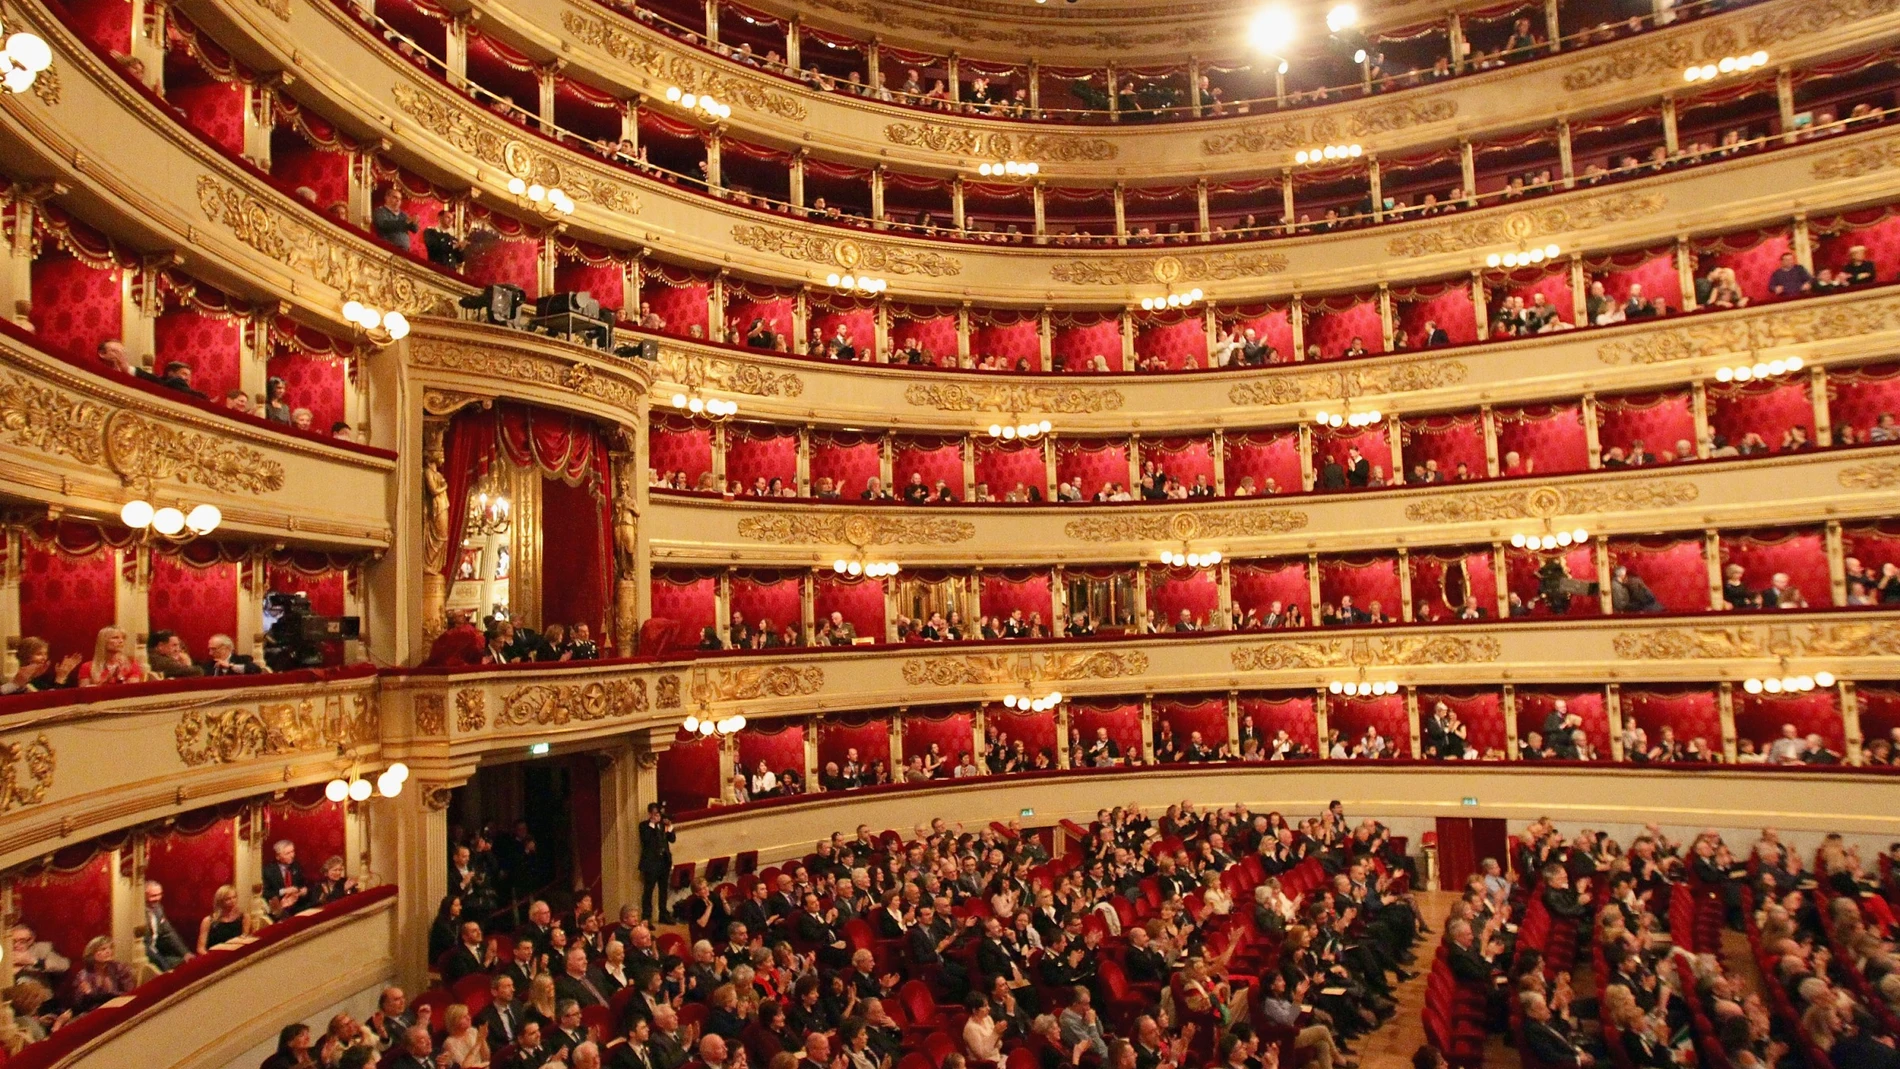 La Scala se inauguró en 1778 y abre siempre su temporada el día de San Ambrosio, el 7 de diciembre